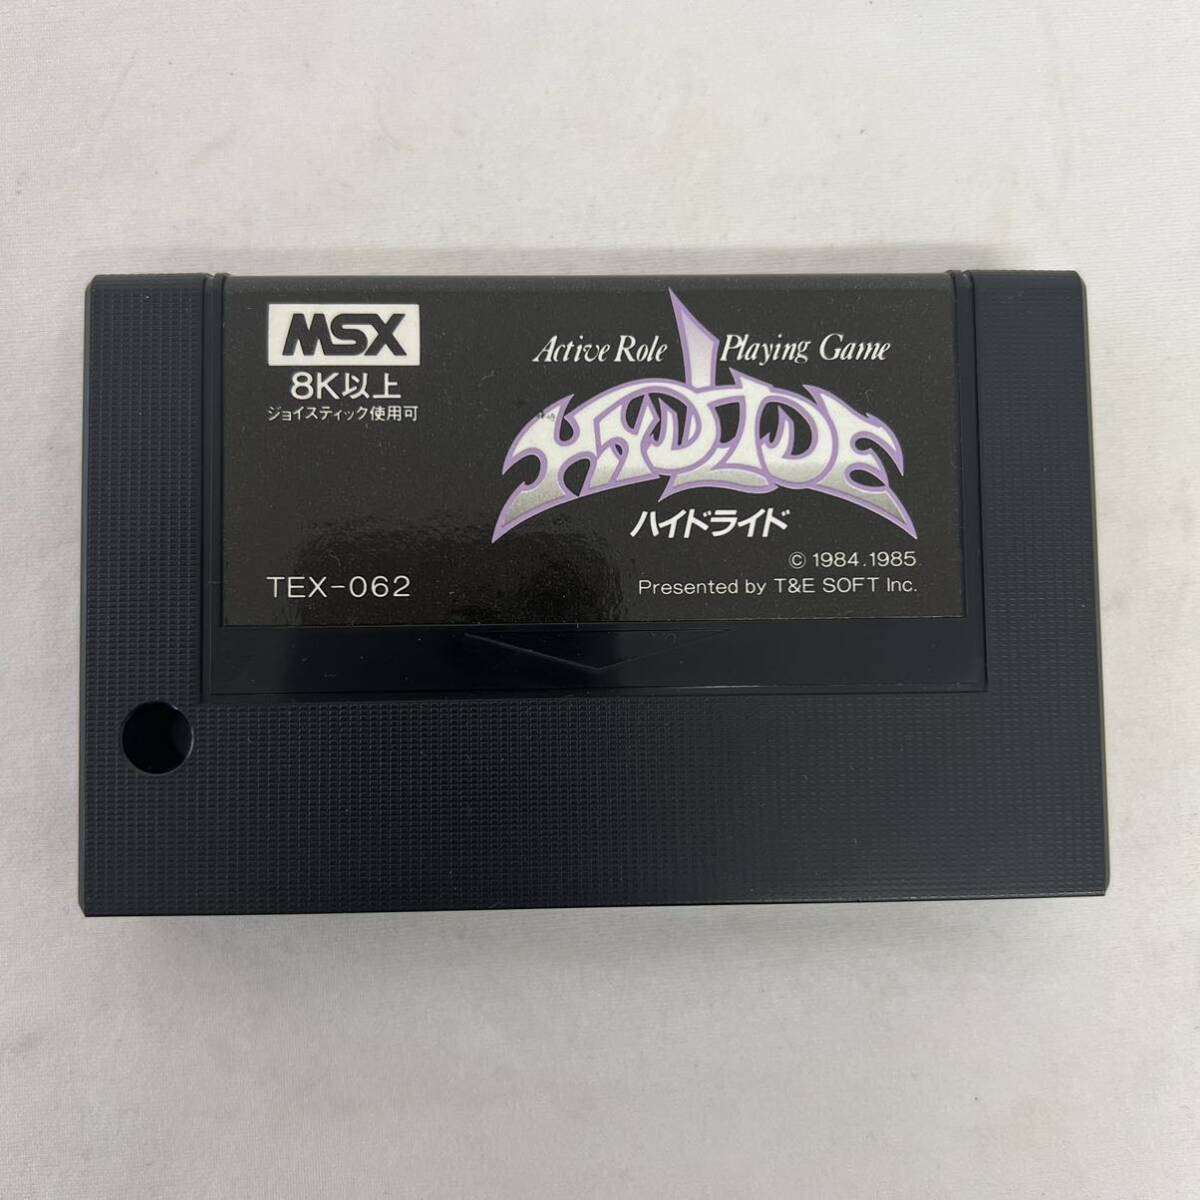  hyde ride MSX cassette soft box opinion attaching junk retro game 